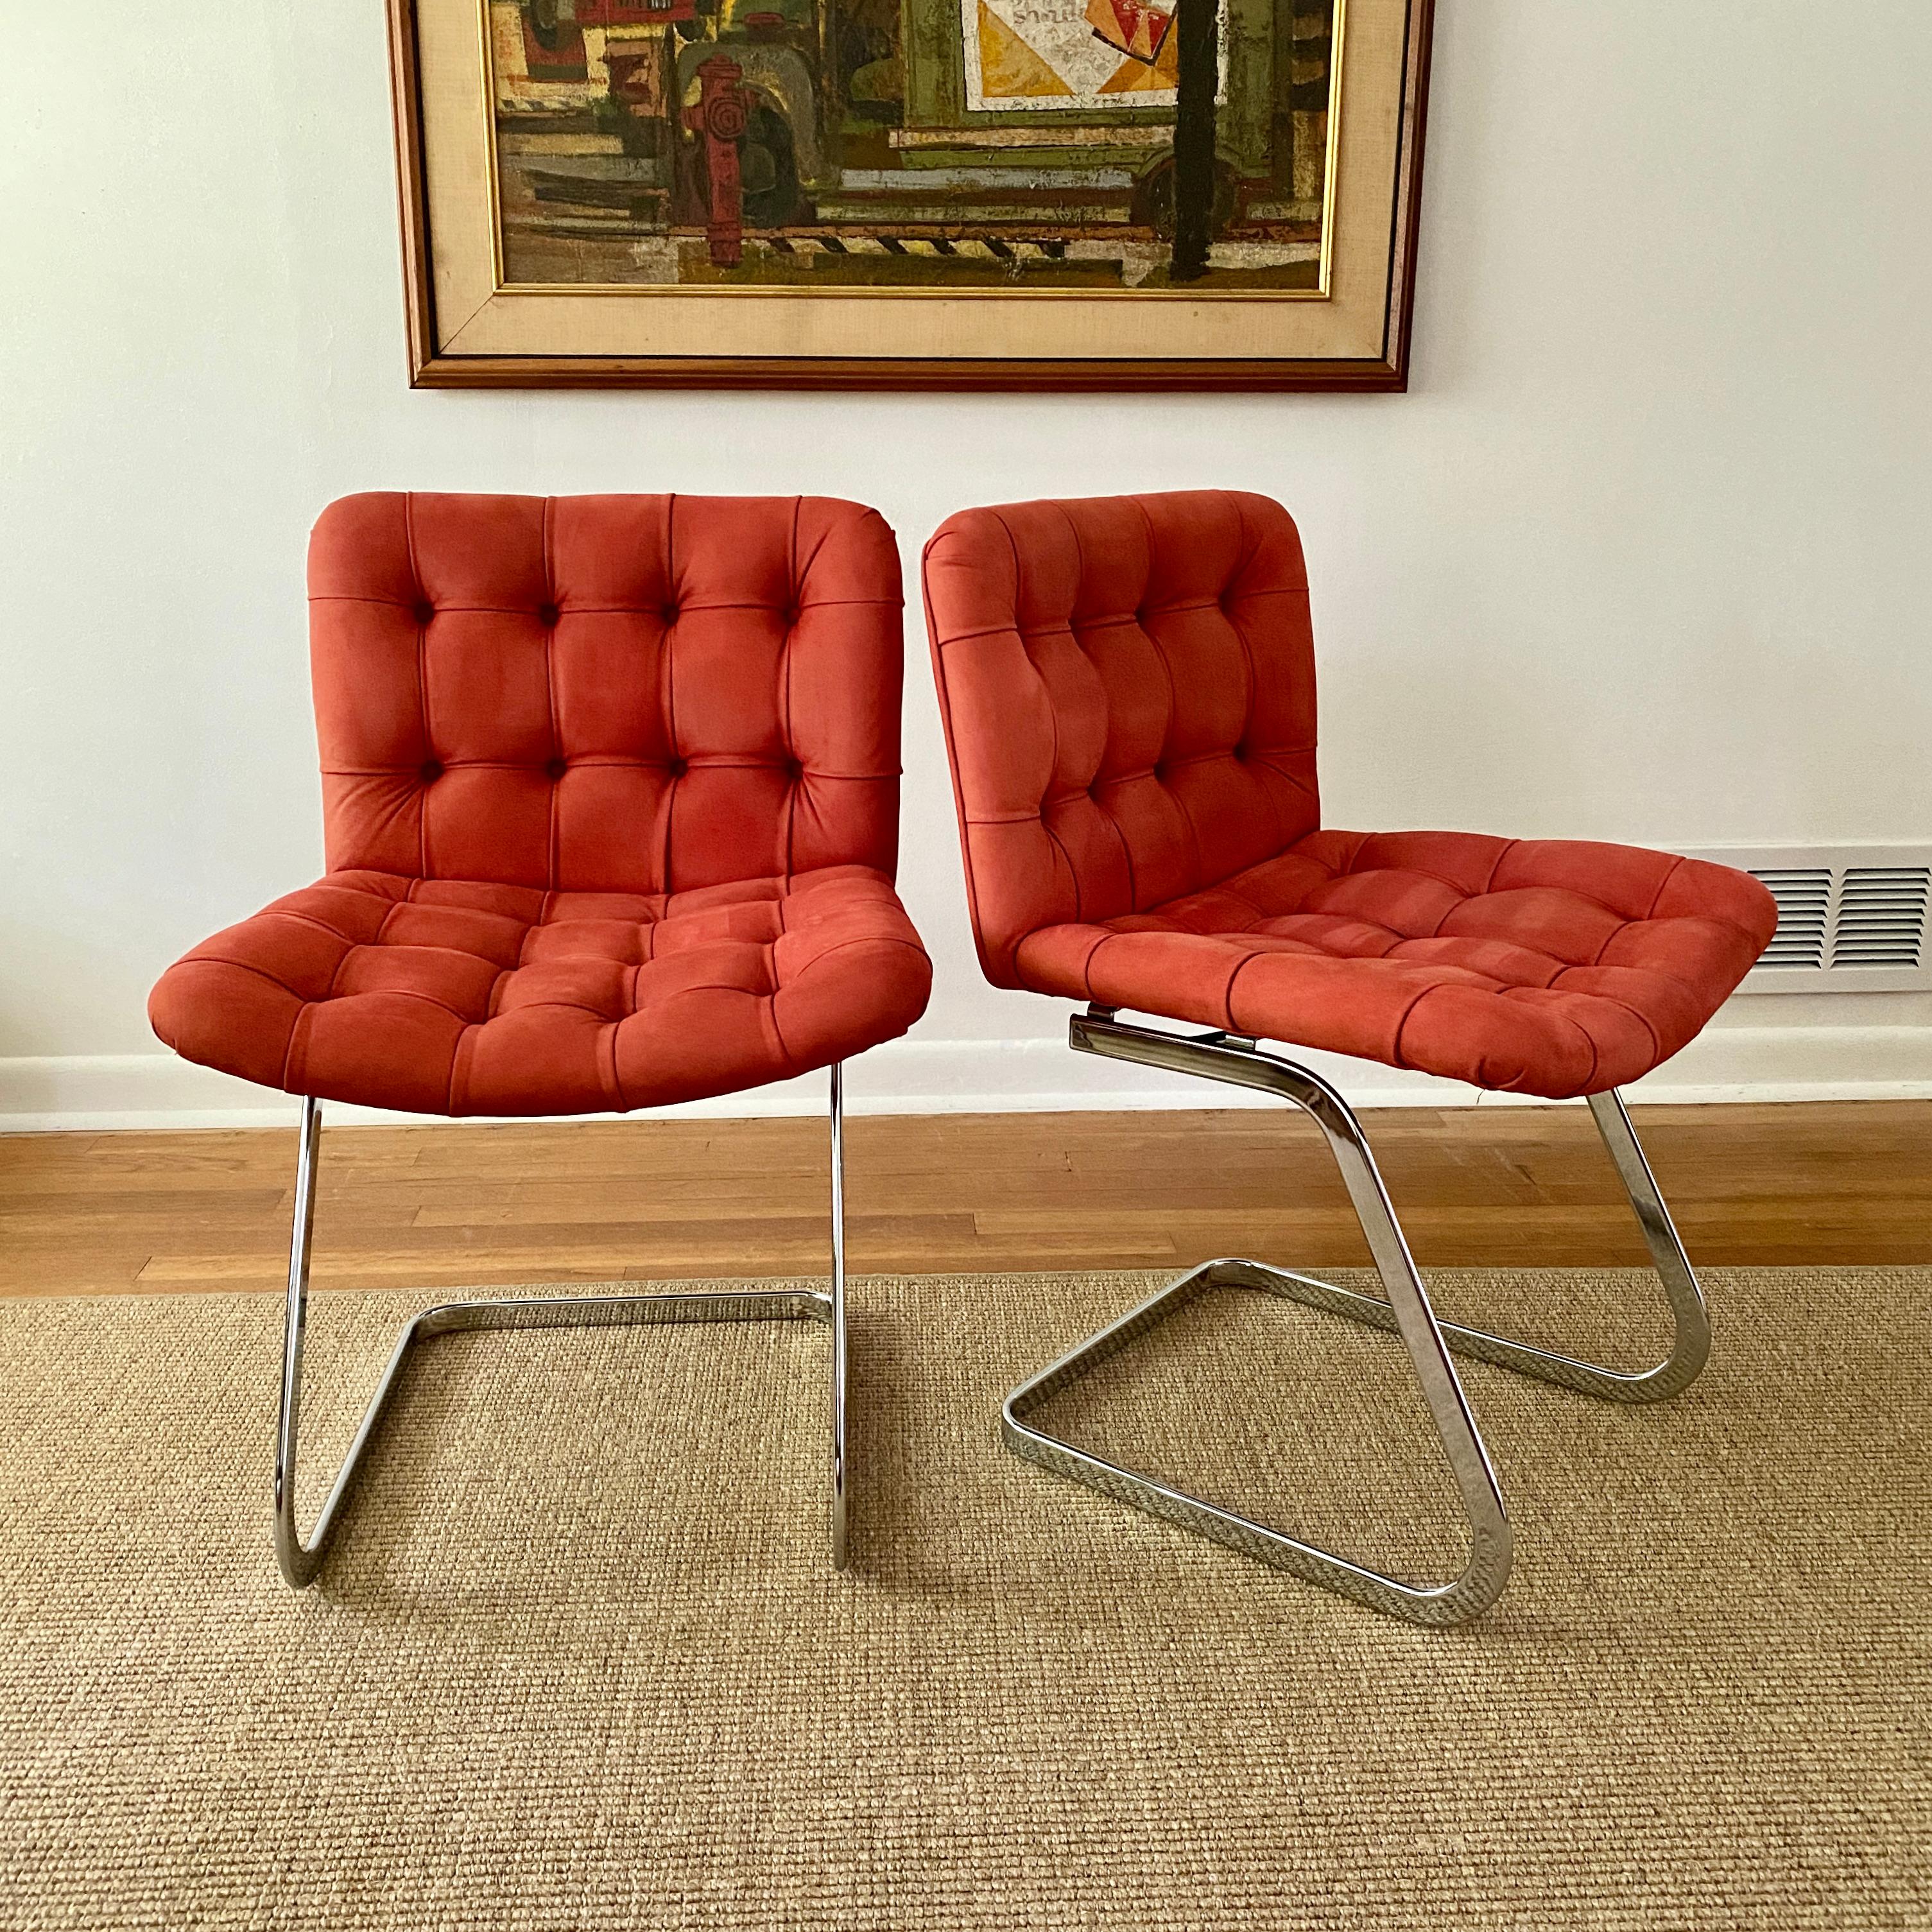 Une belle paire de chaises cantilever vintage conçue par Robert Haussmann pour de Sede, les chaises ont été distribuées par Stendig.  Le numéro de modèle de ces chaises est RH - 304 et elles ont été produites entre 1955 et 1960.  Les pieds des